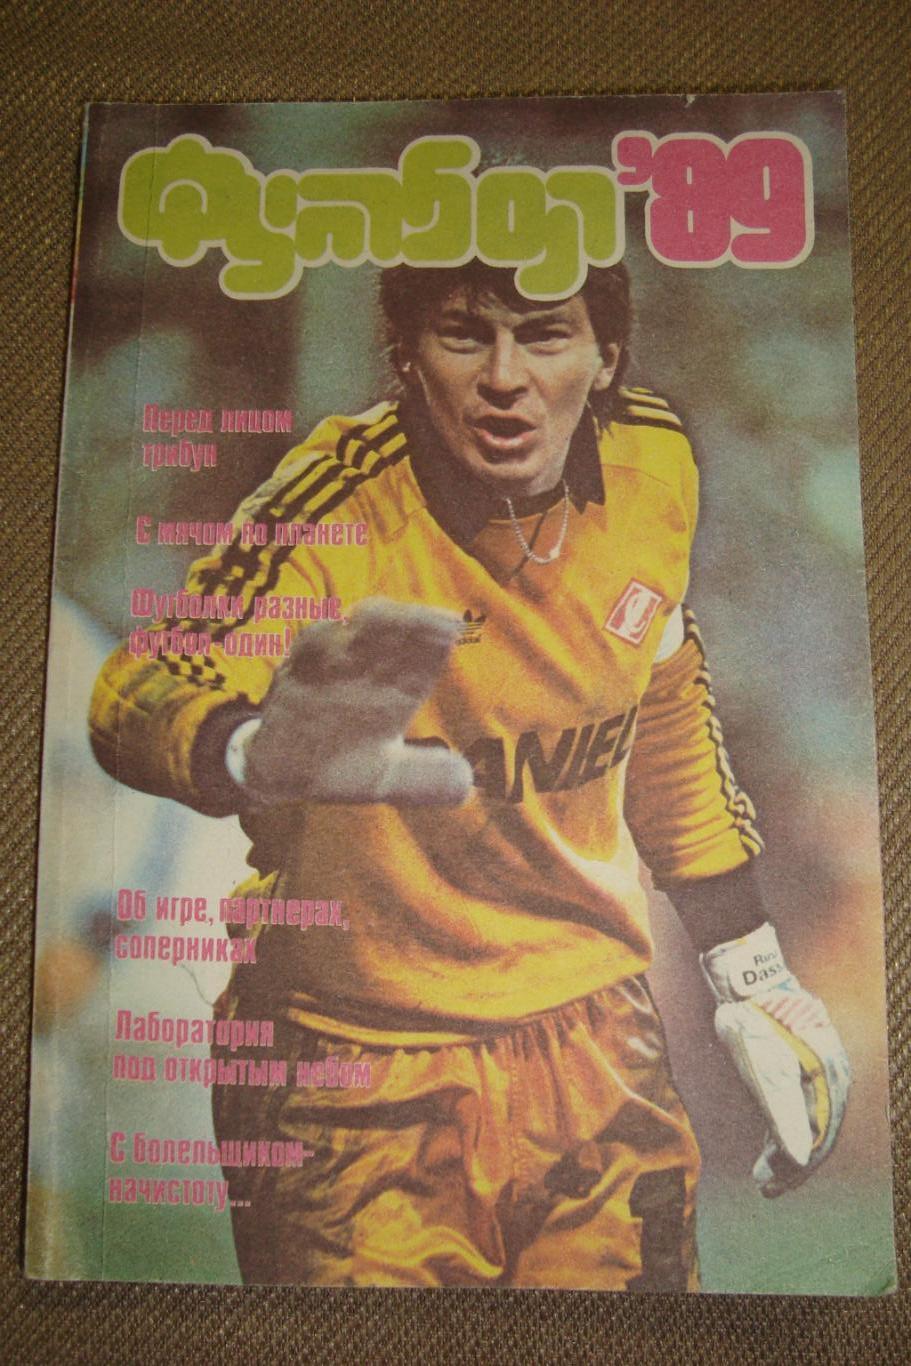 Альманах Сборник статей. Футбол - 1989. Содержание на фото.